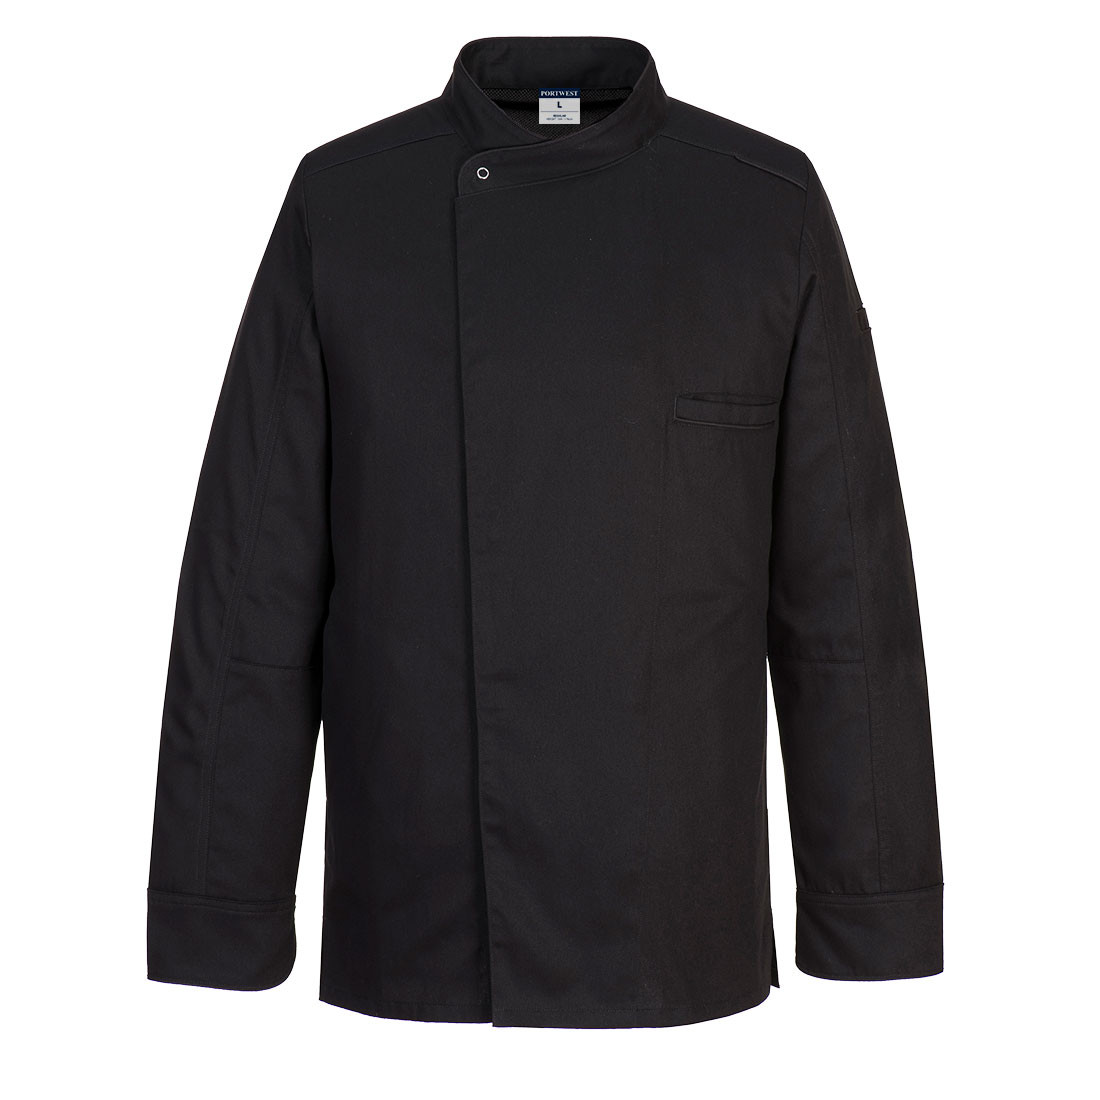 Surrey Chefs Jacket L/S - Safetywear